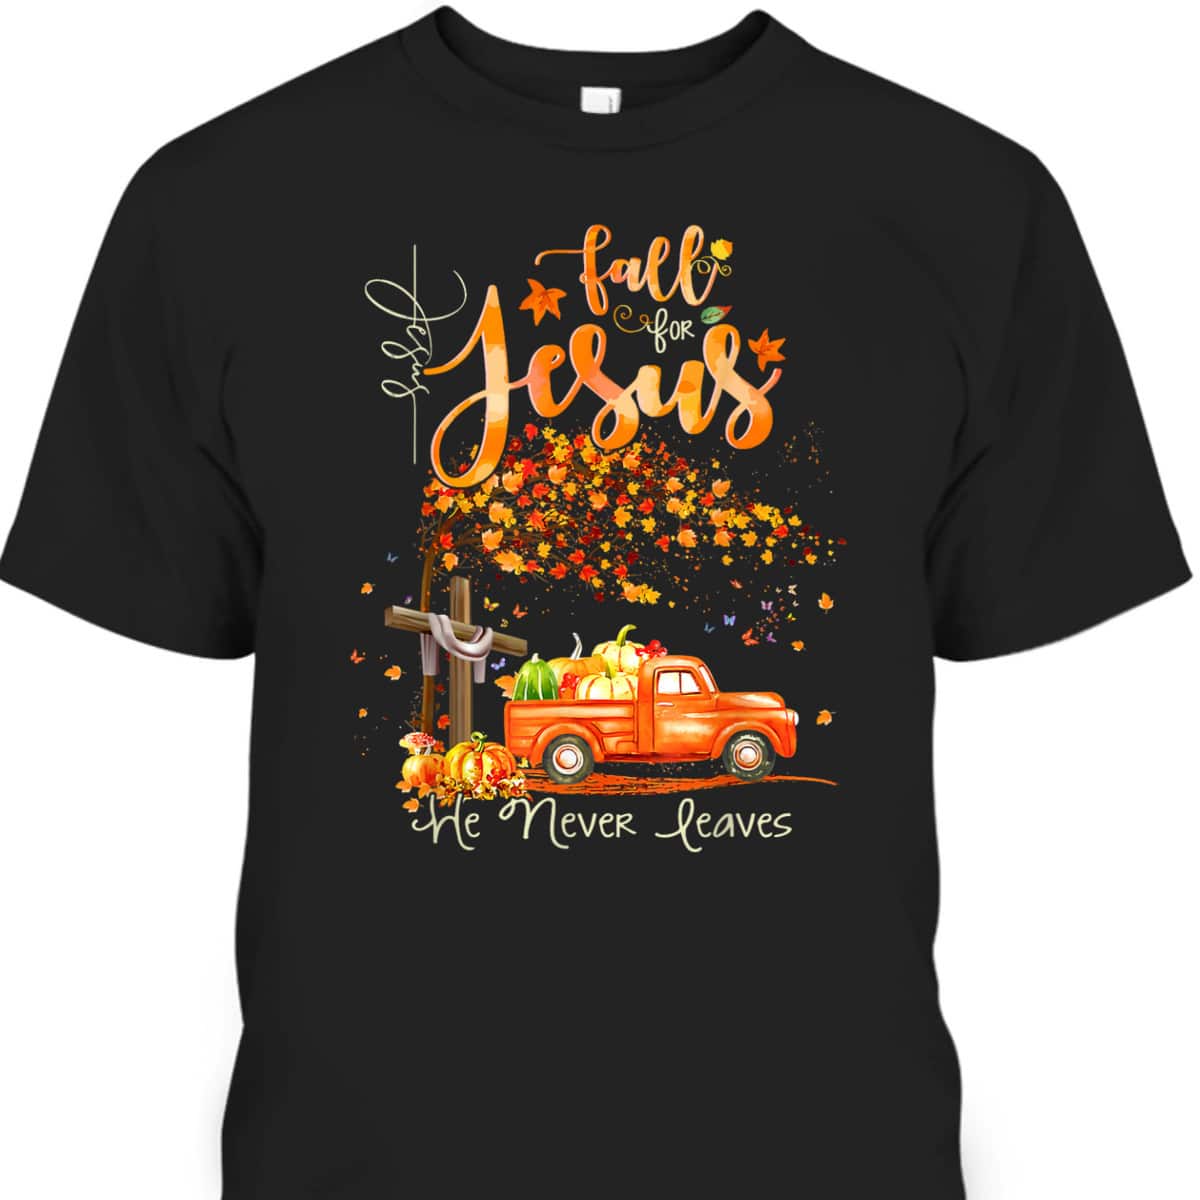 Cross Jesus Christian Lover Fall For Jesus He Never Leaves T-Shirt